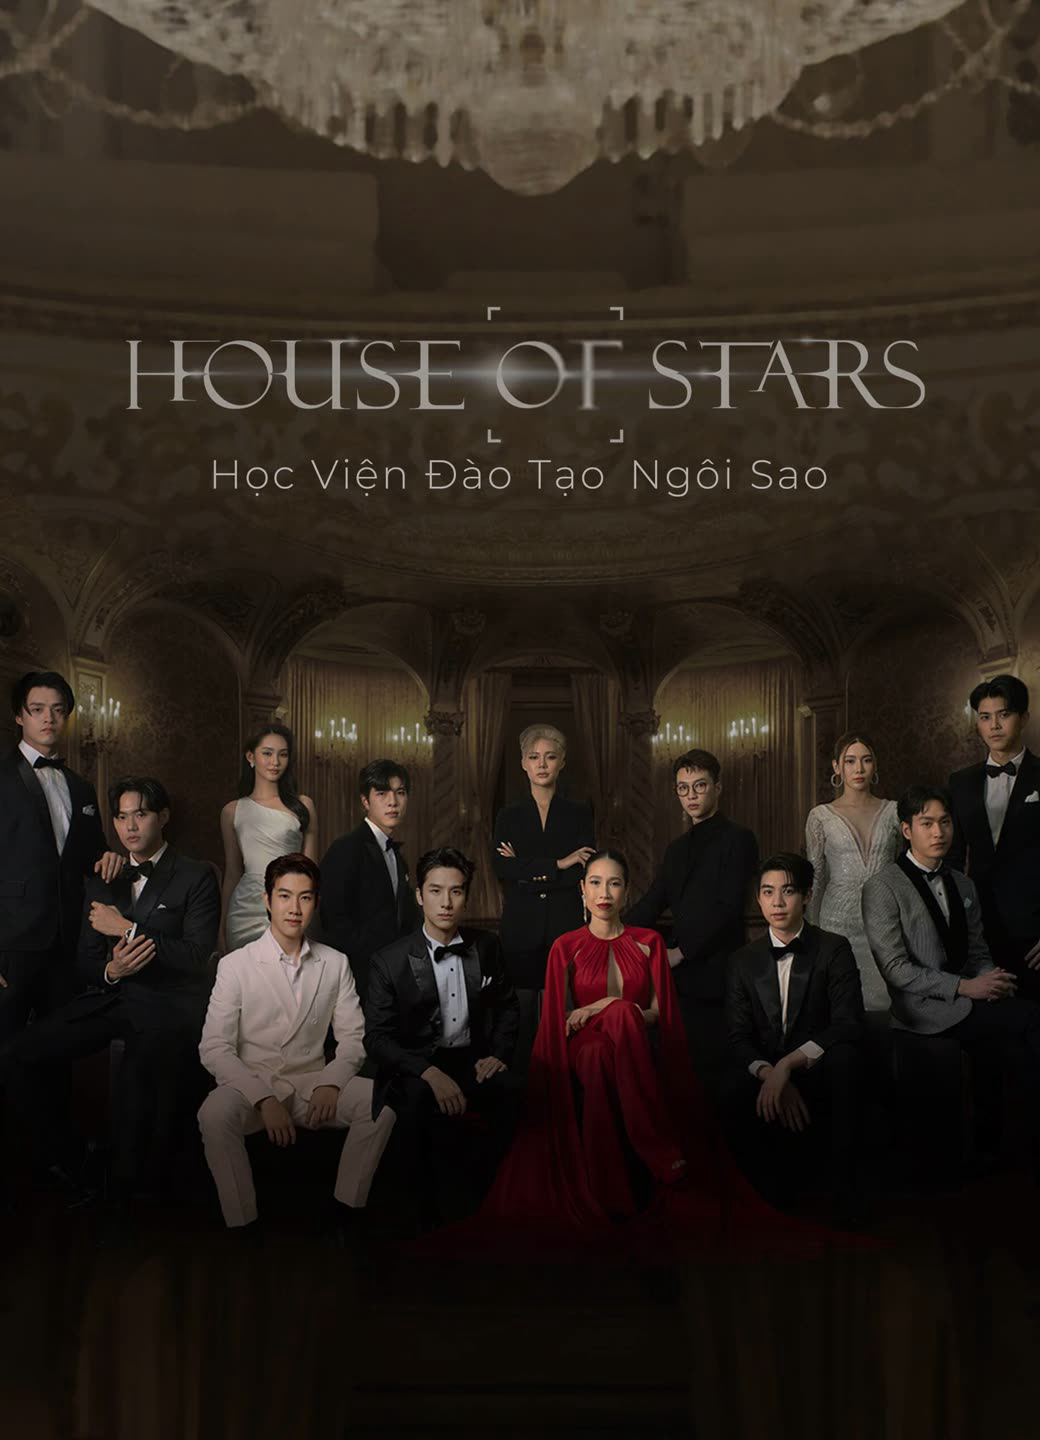 Poster Phim House of Stars: Học Viện Đào Tạo Ngôi Sao (House of stars)